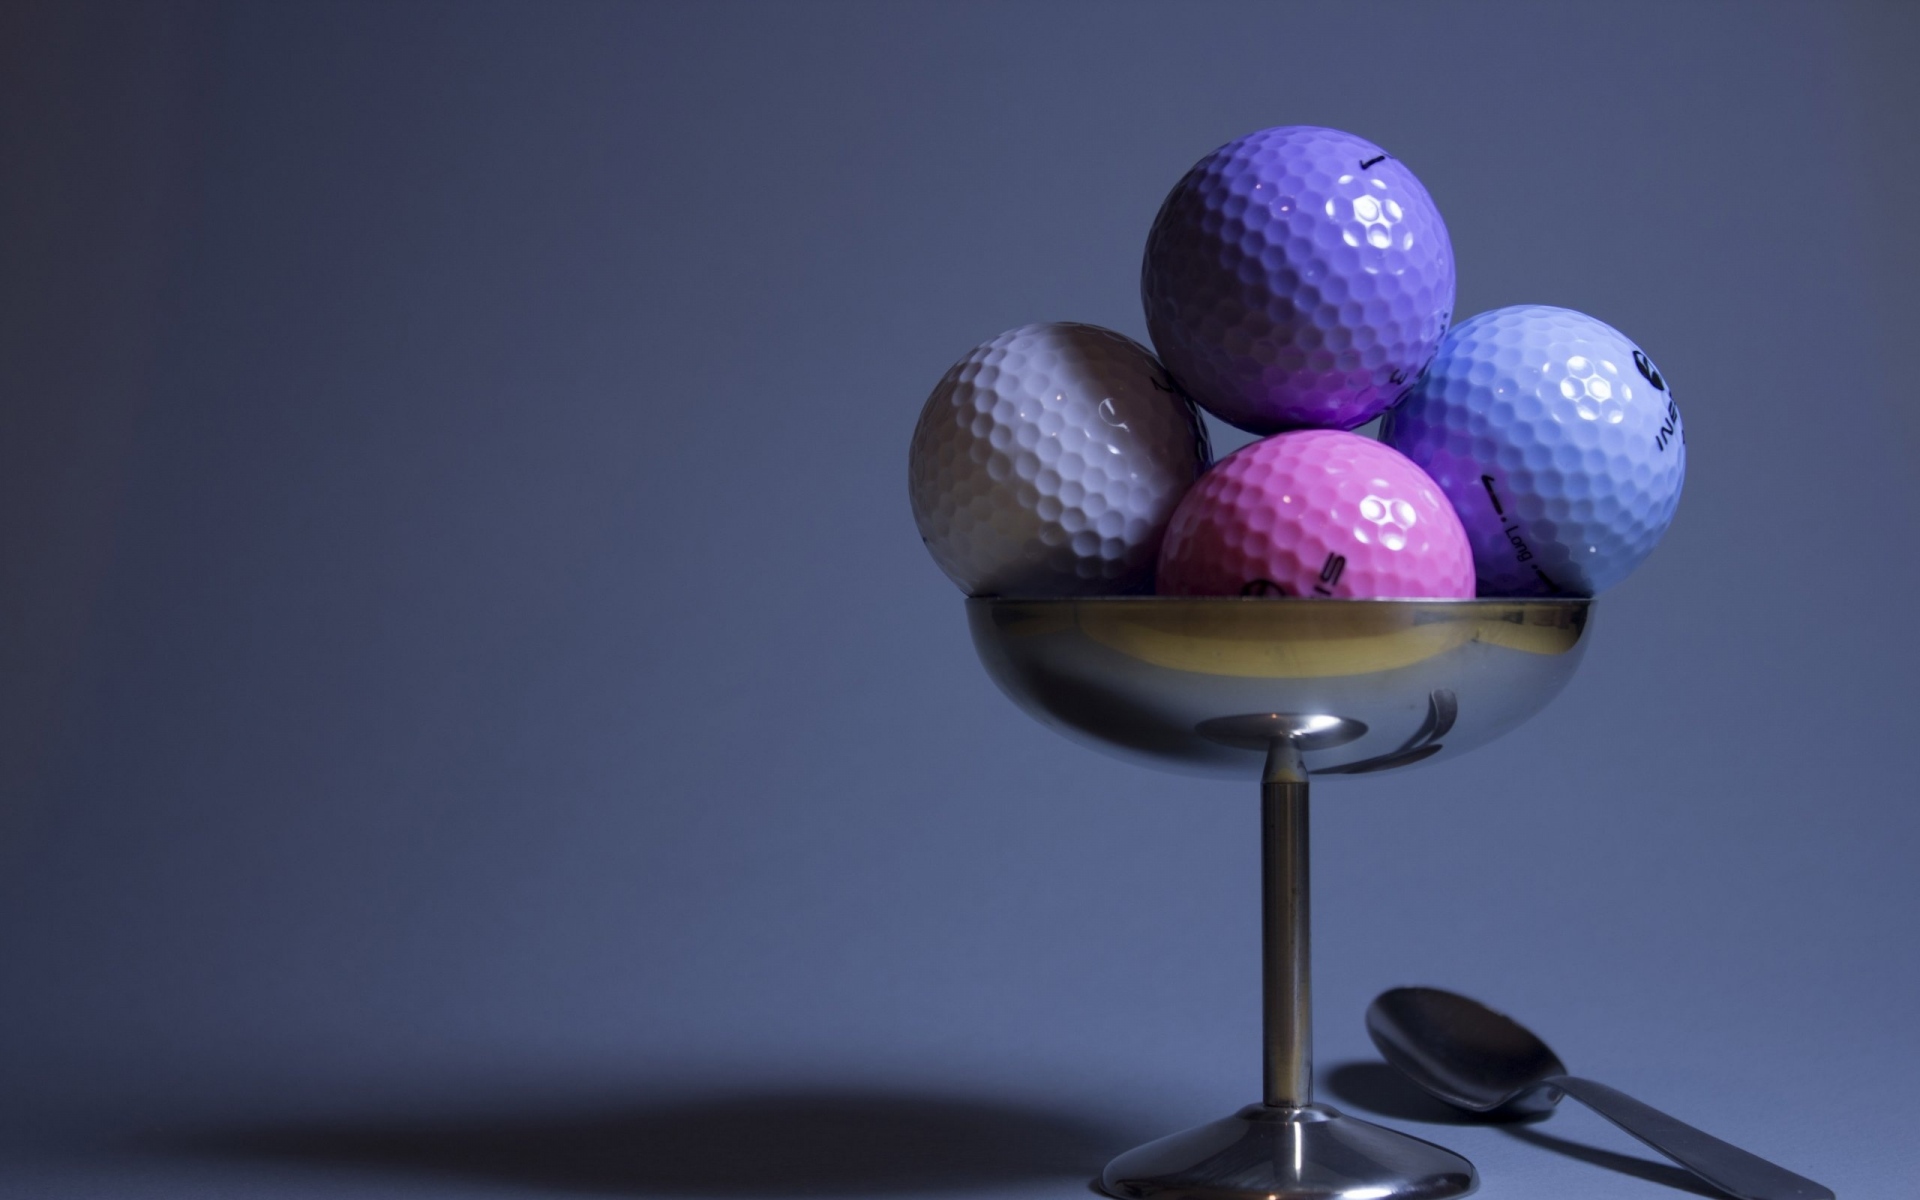 Картинки гольф,мячи для гольфа, имитация, еда фото и обои на рабочий стол